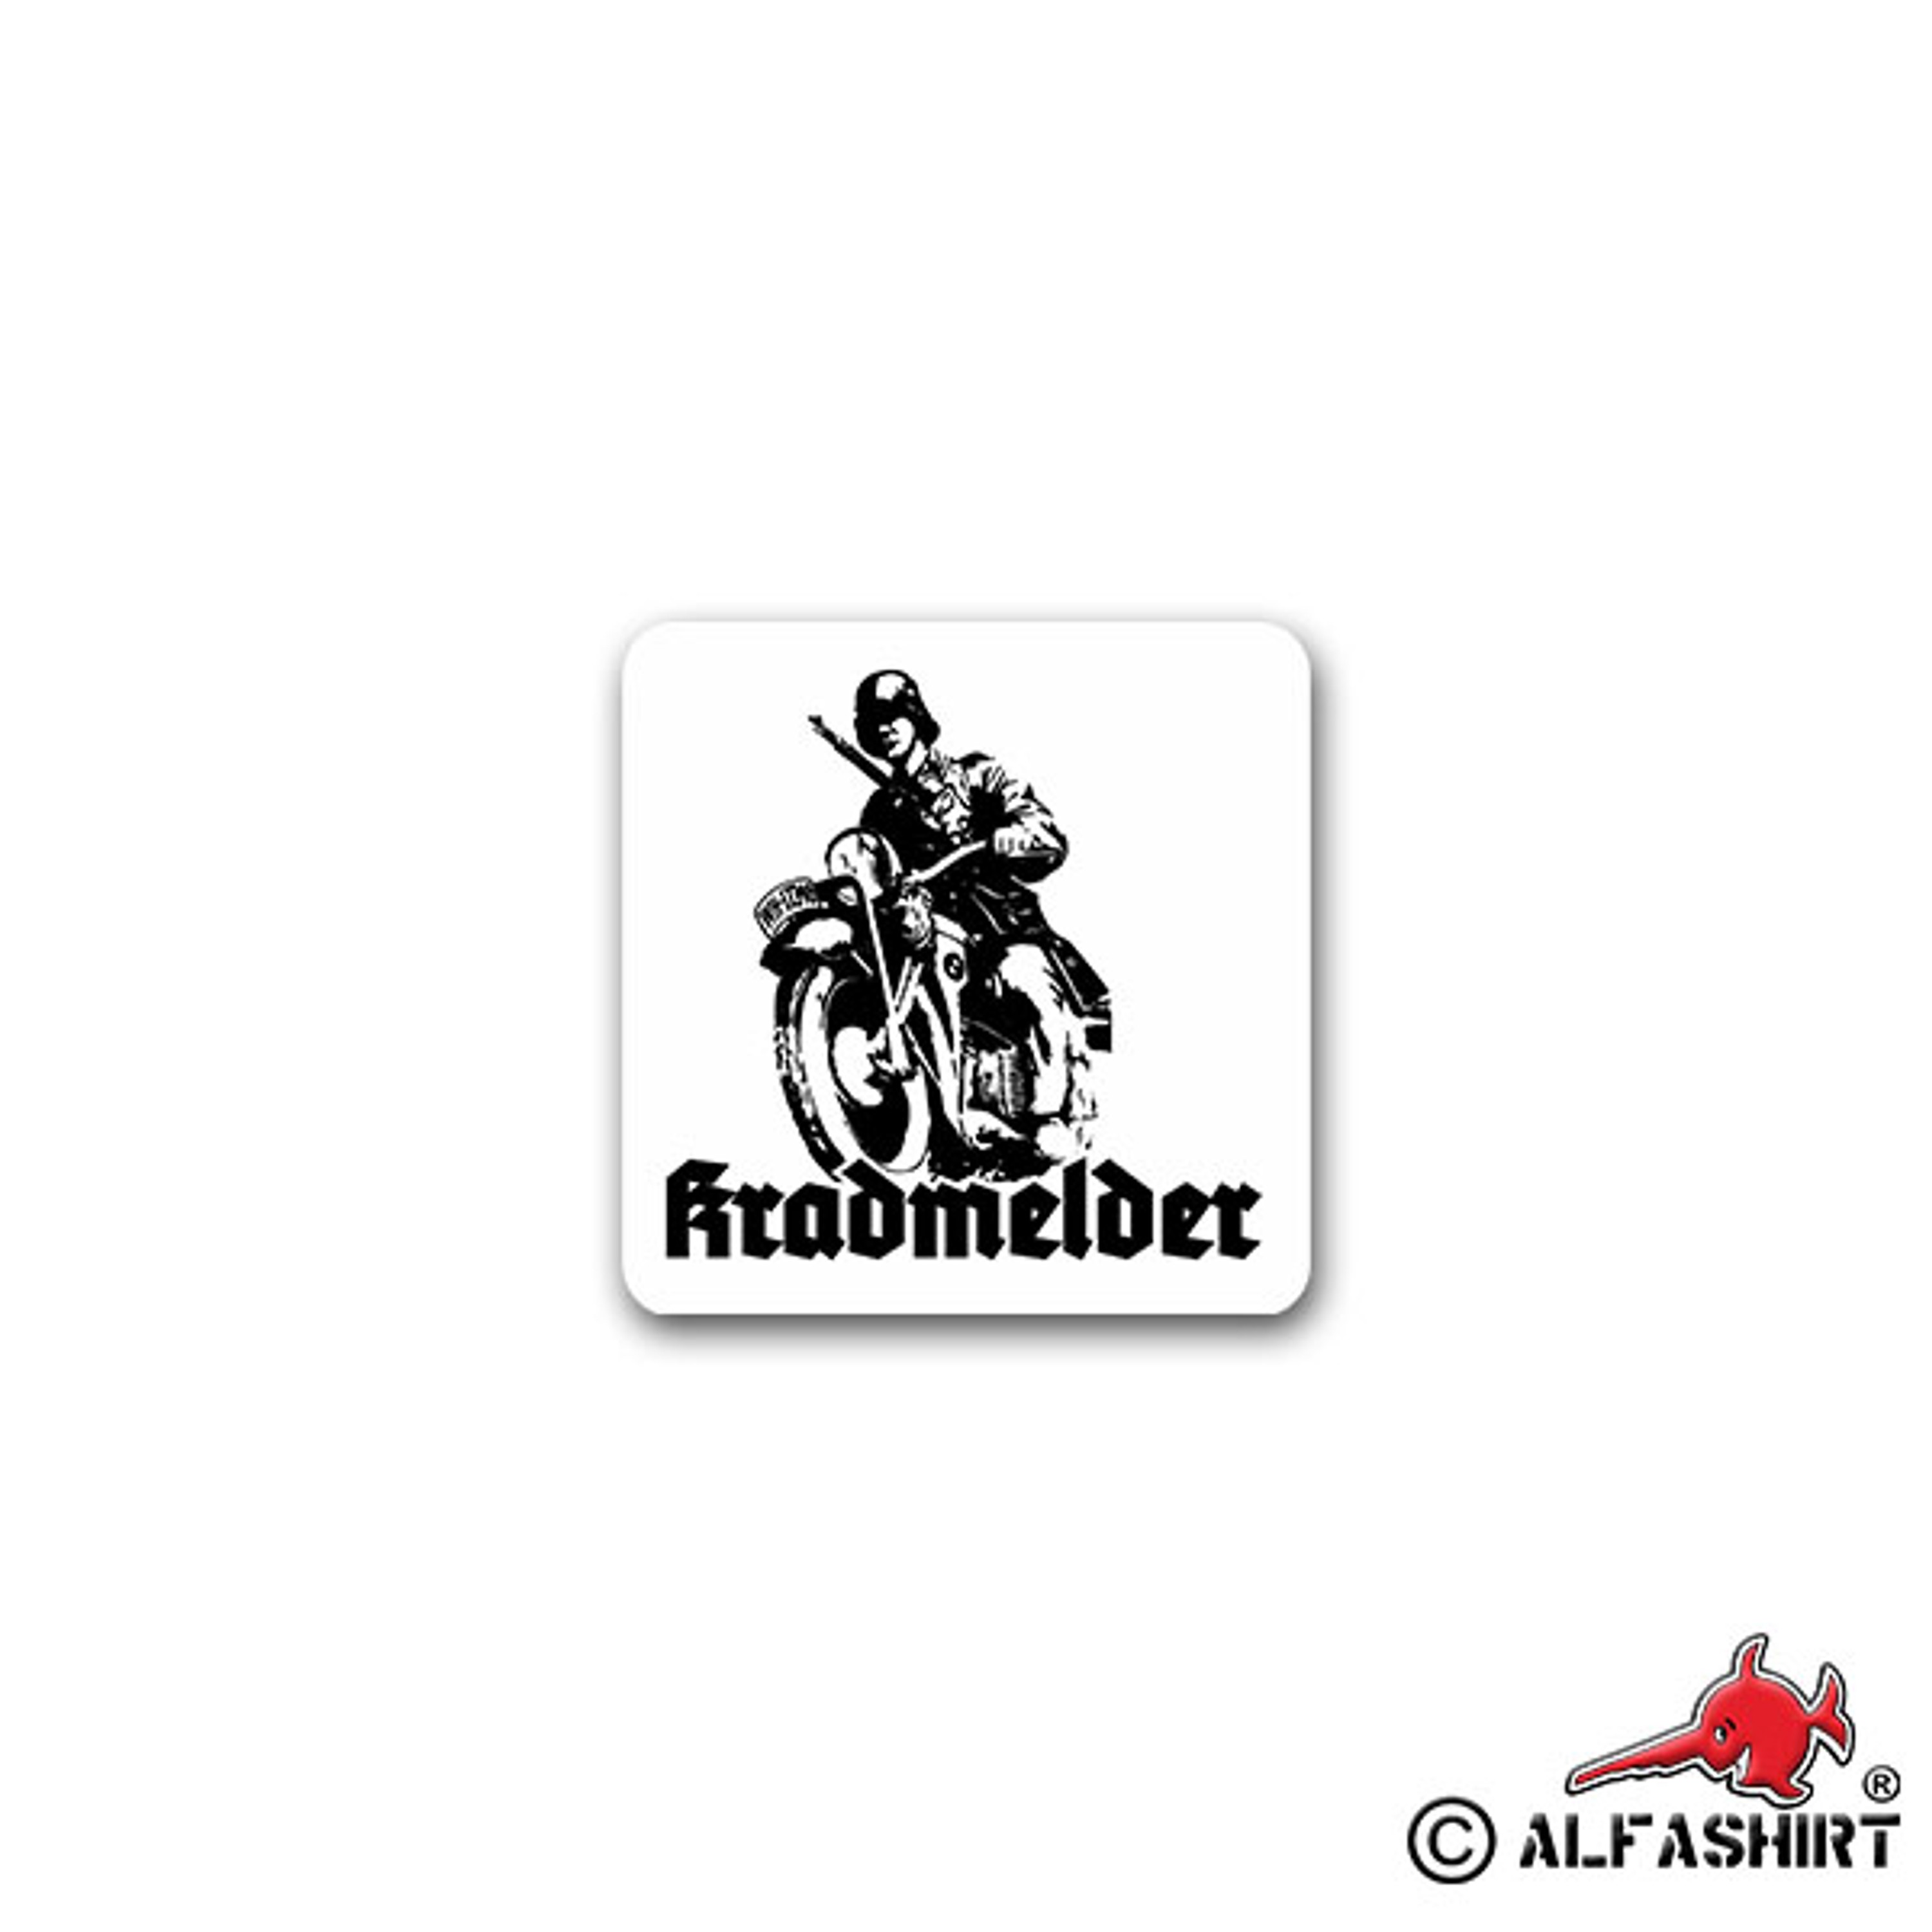 https://alfashirt.de/media/image/8e/8e/f2/A2673-Kradmelder-Aufkleber-Sticker-Motorrad-Streitkraefte-Erkunder-Moped-Gelaende-Krad-Motorcross-Gelaendemaschine-Maschine-Oldtimer-Militaer-7x7cm-3-90.jpg